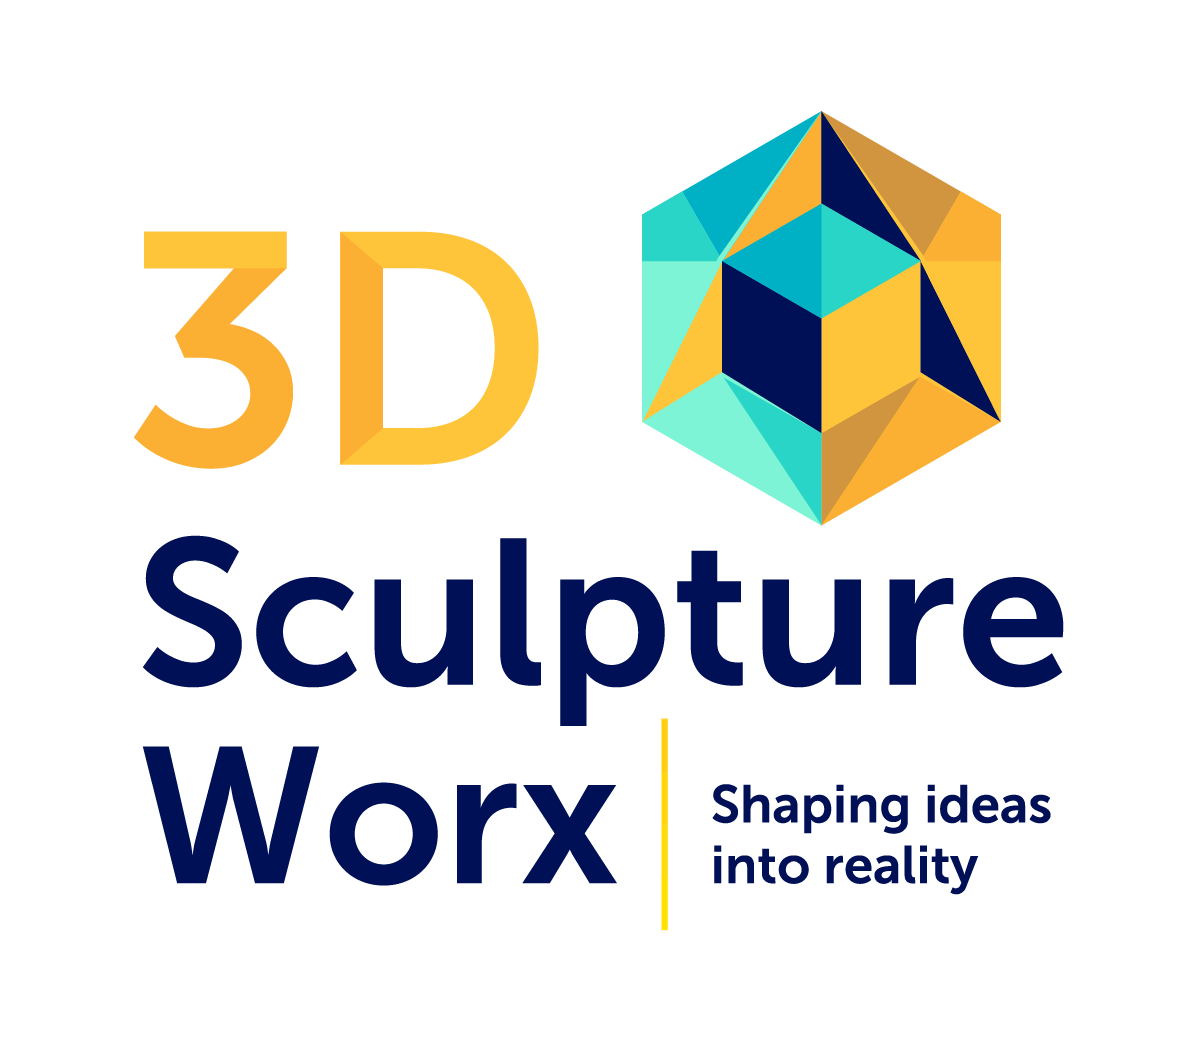 3D Sculpture Worx